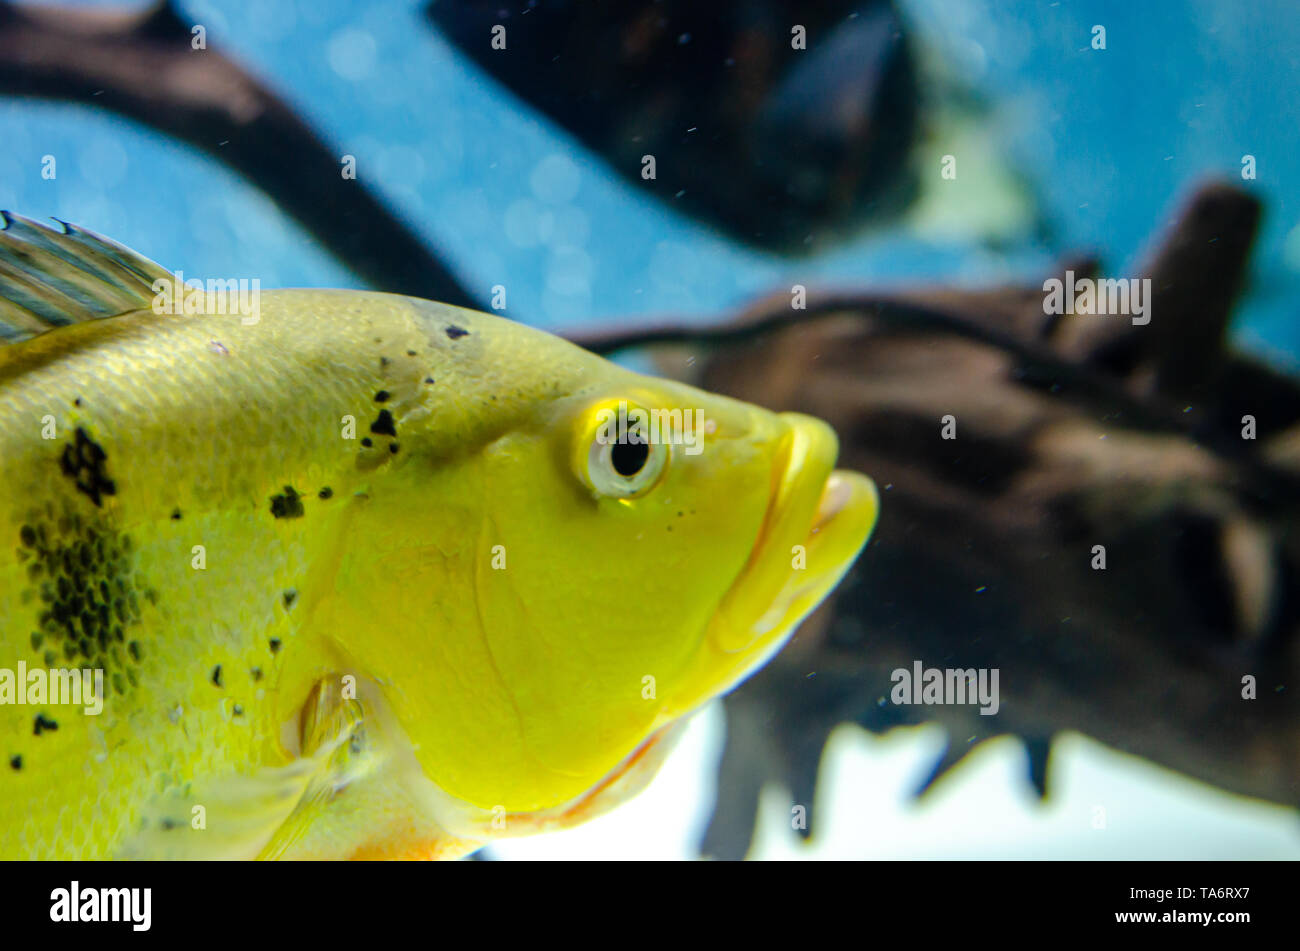 fish cichla kelbri in the aquarium Stock Photo